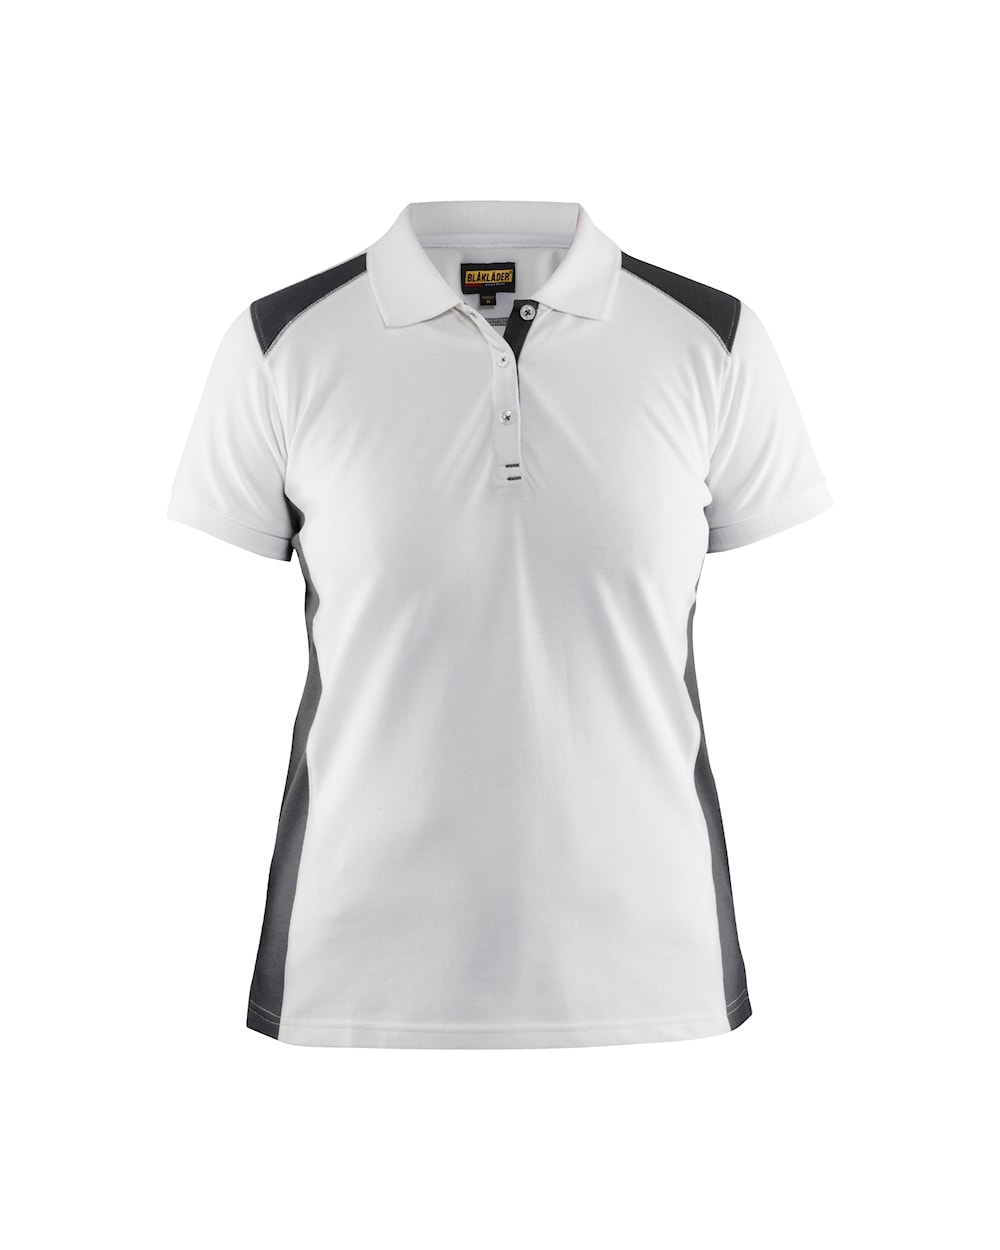 Damen Polo Shirt Weiß-Grau Vorne